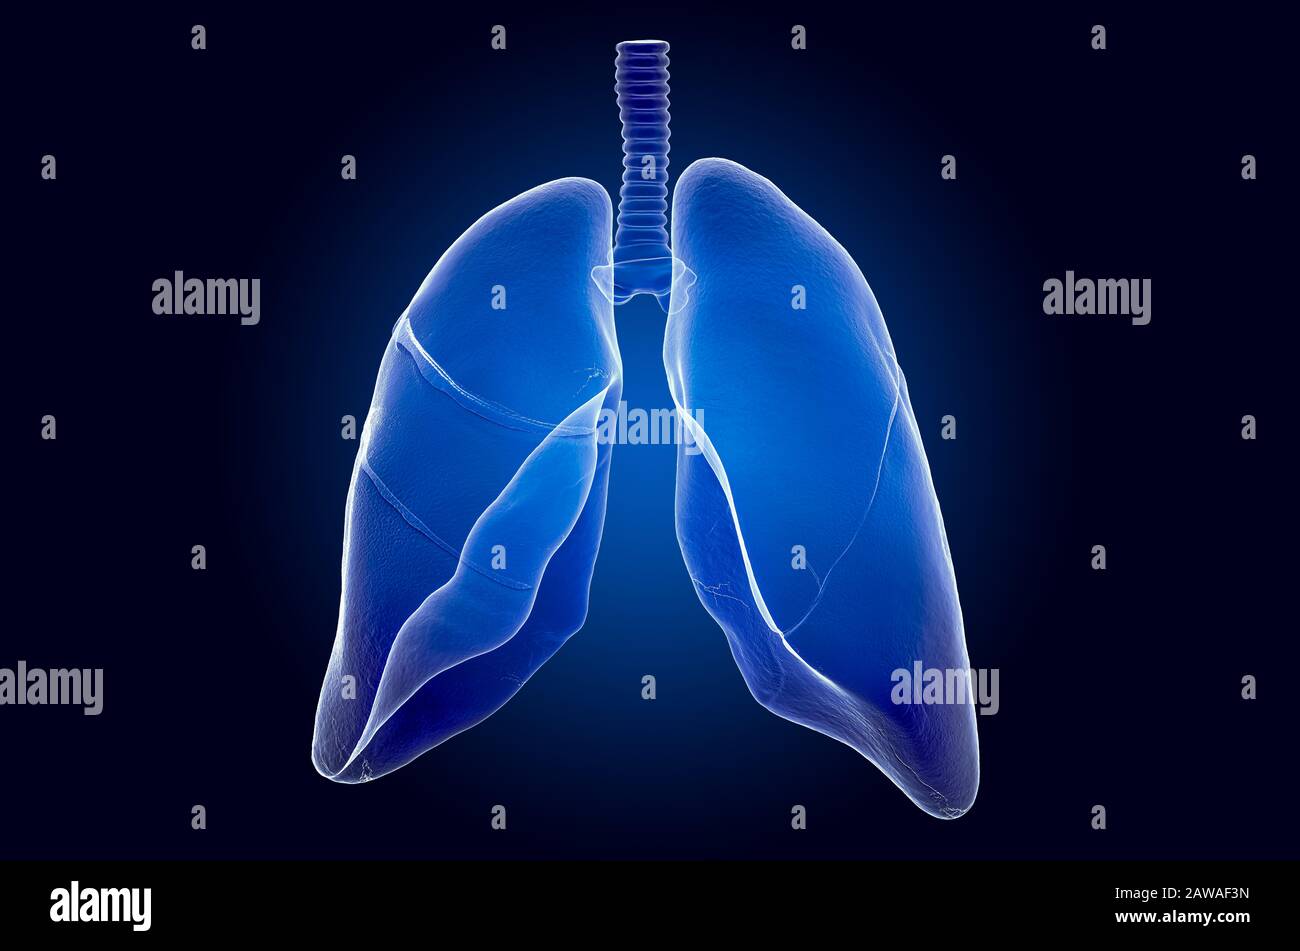 Polmoni umani, ologramma a raggi X. Rendering 3D su sfondo blu scuro Foto Stock